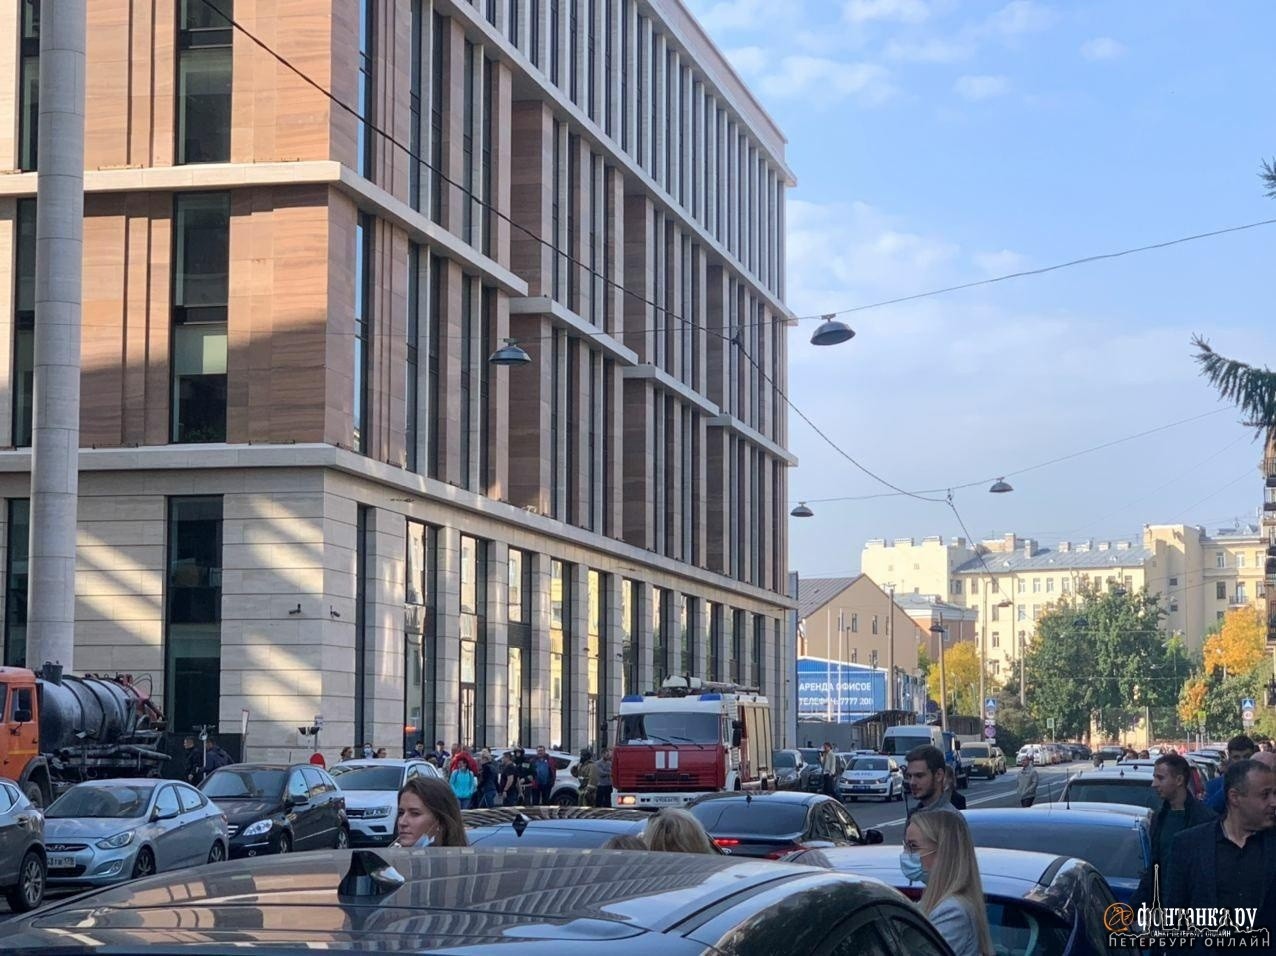 Сегодня около 12:20 загорелся КамАЗ, припаркованный на тротуаре около здания Администрации Санкт-Пет...